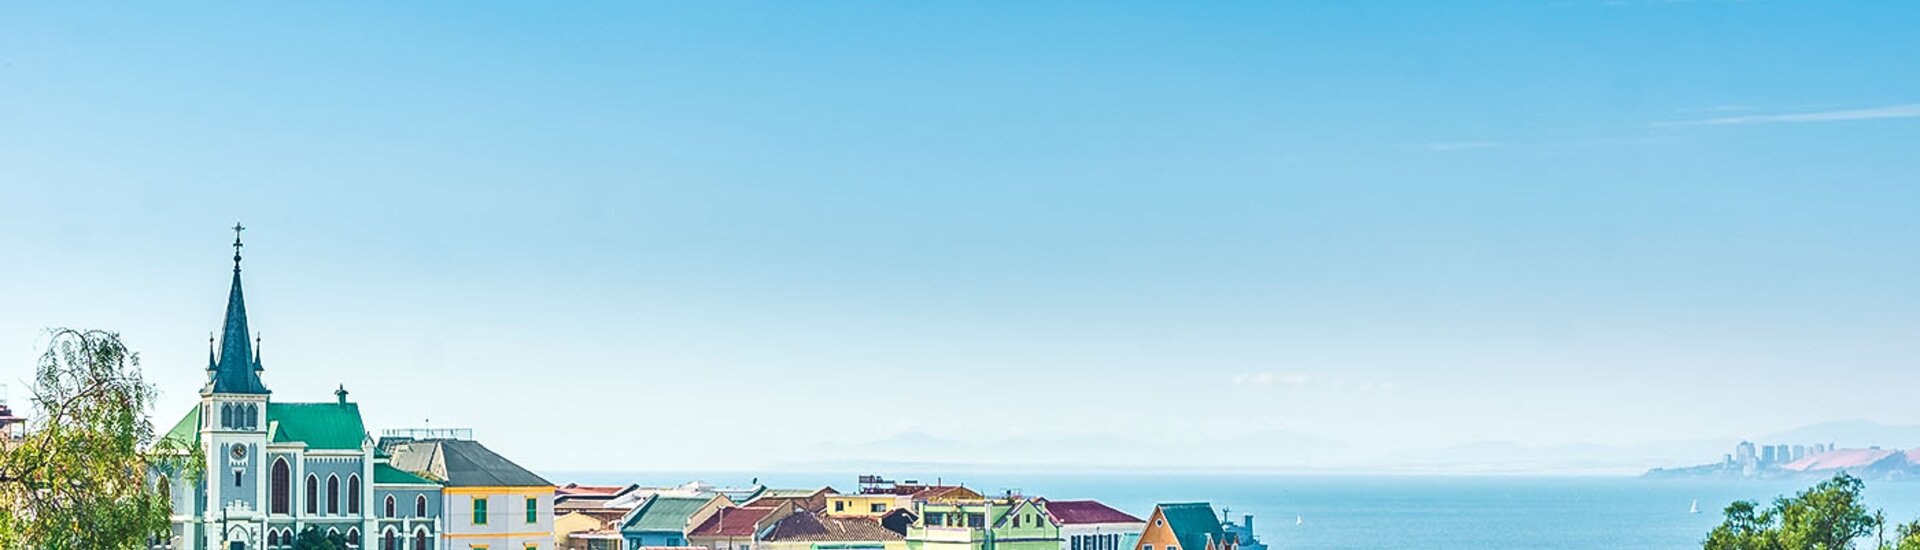 Ausblick auf das Meer von der Stadt Valparaiso